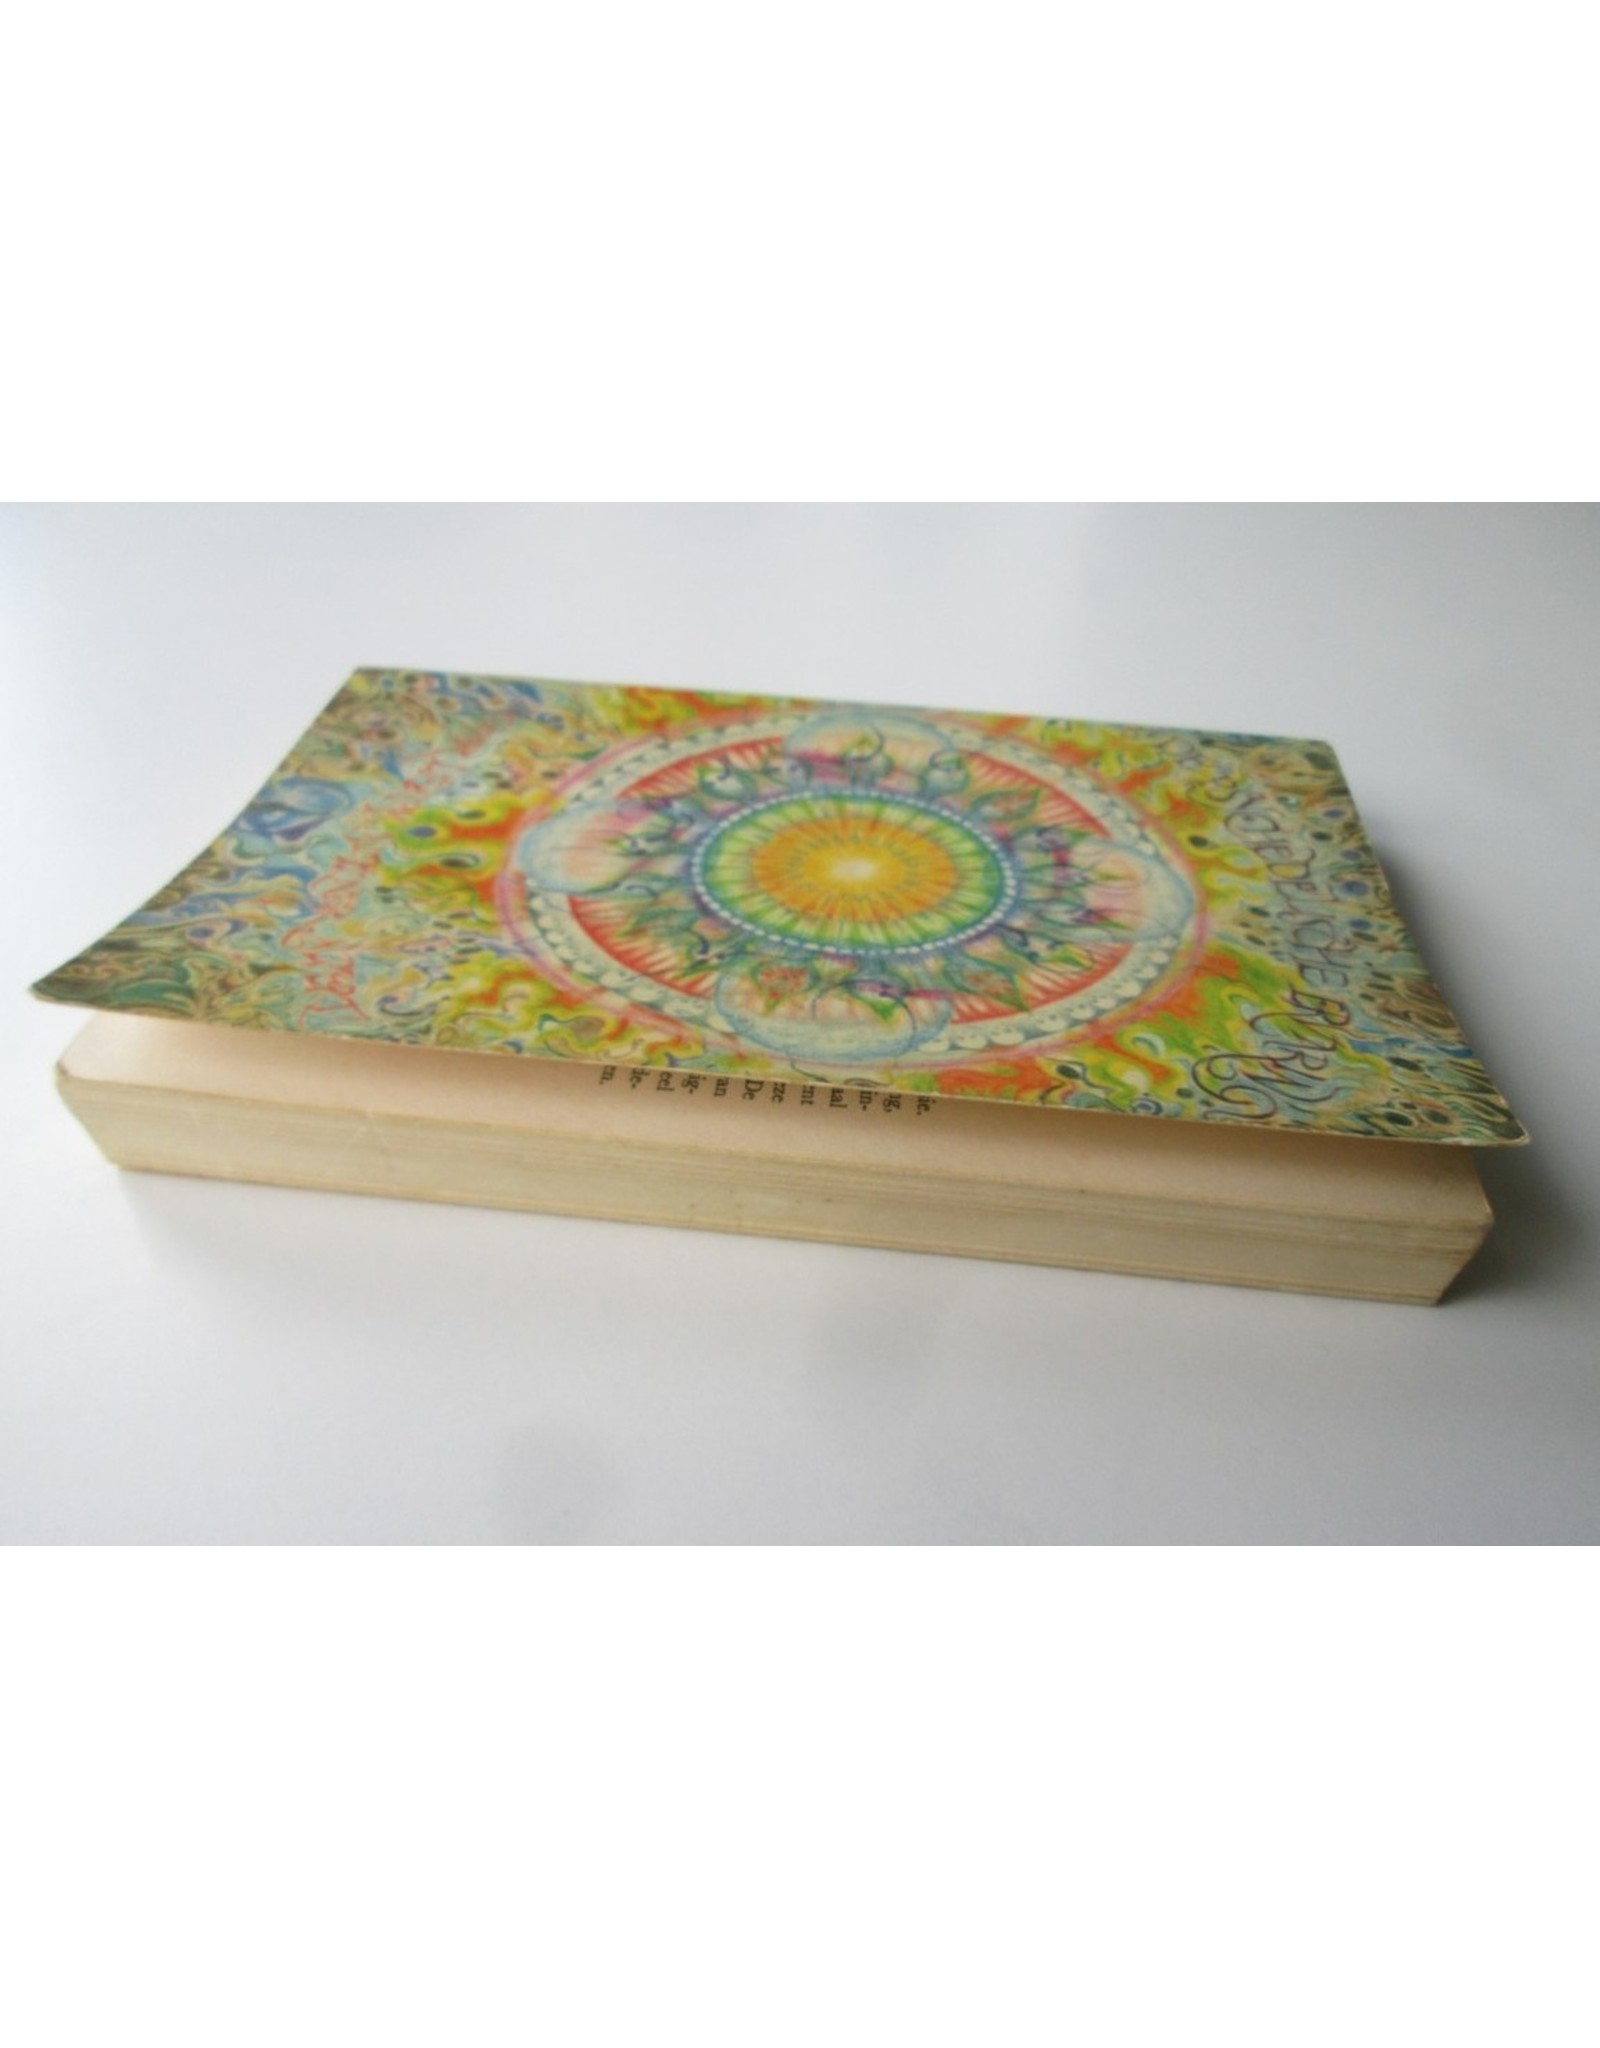 Timothy Leary - De psychedelische ervaring: Een handboek gebaseerd op het Tibetaanse Dodenboek. Vertaling Richard Hübner & Simon Vinkenoog